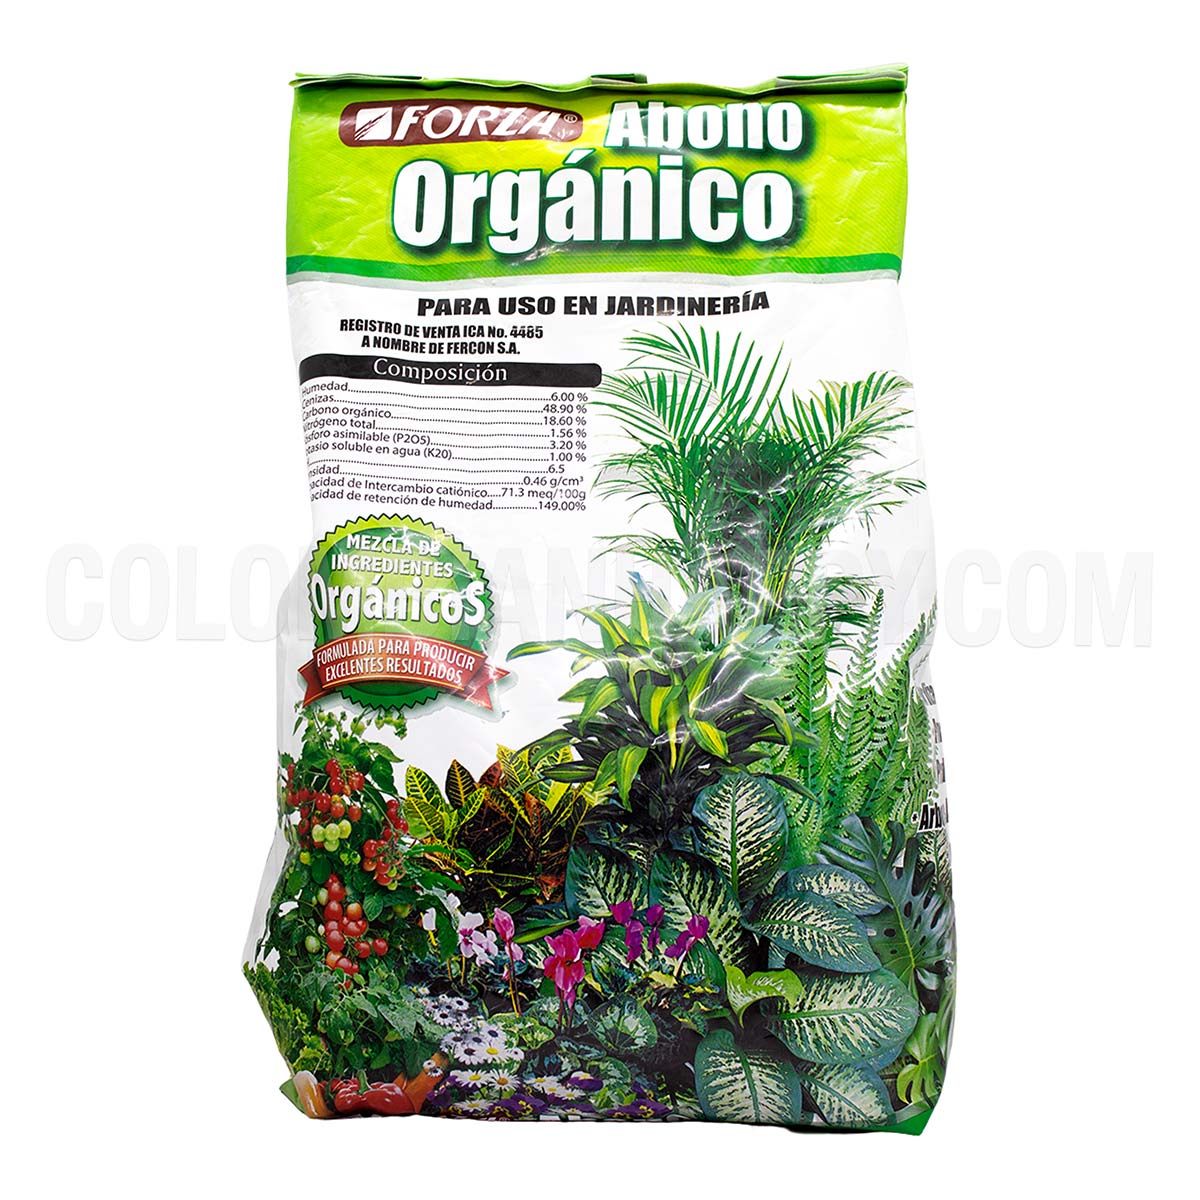 Abono orgánico es un producto 100% natural diseñado para proporcionar todos los nutrientes necesarios para el óptimo crecimiento de todo tipo de plantas tanto de interior como de exterior.